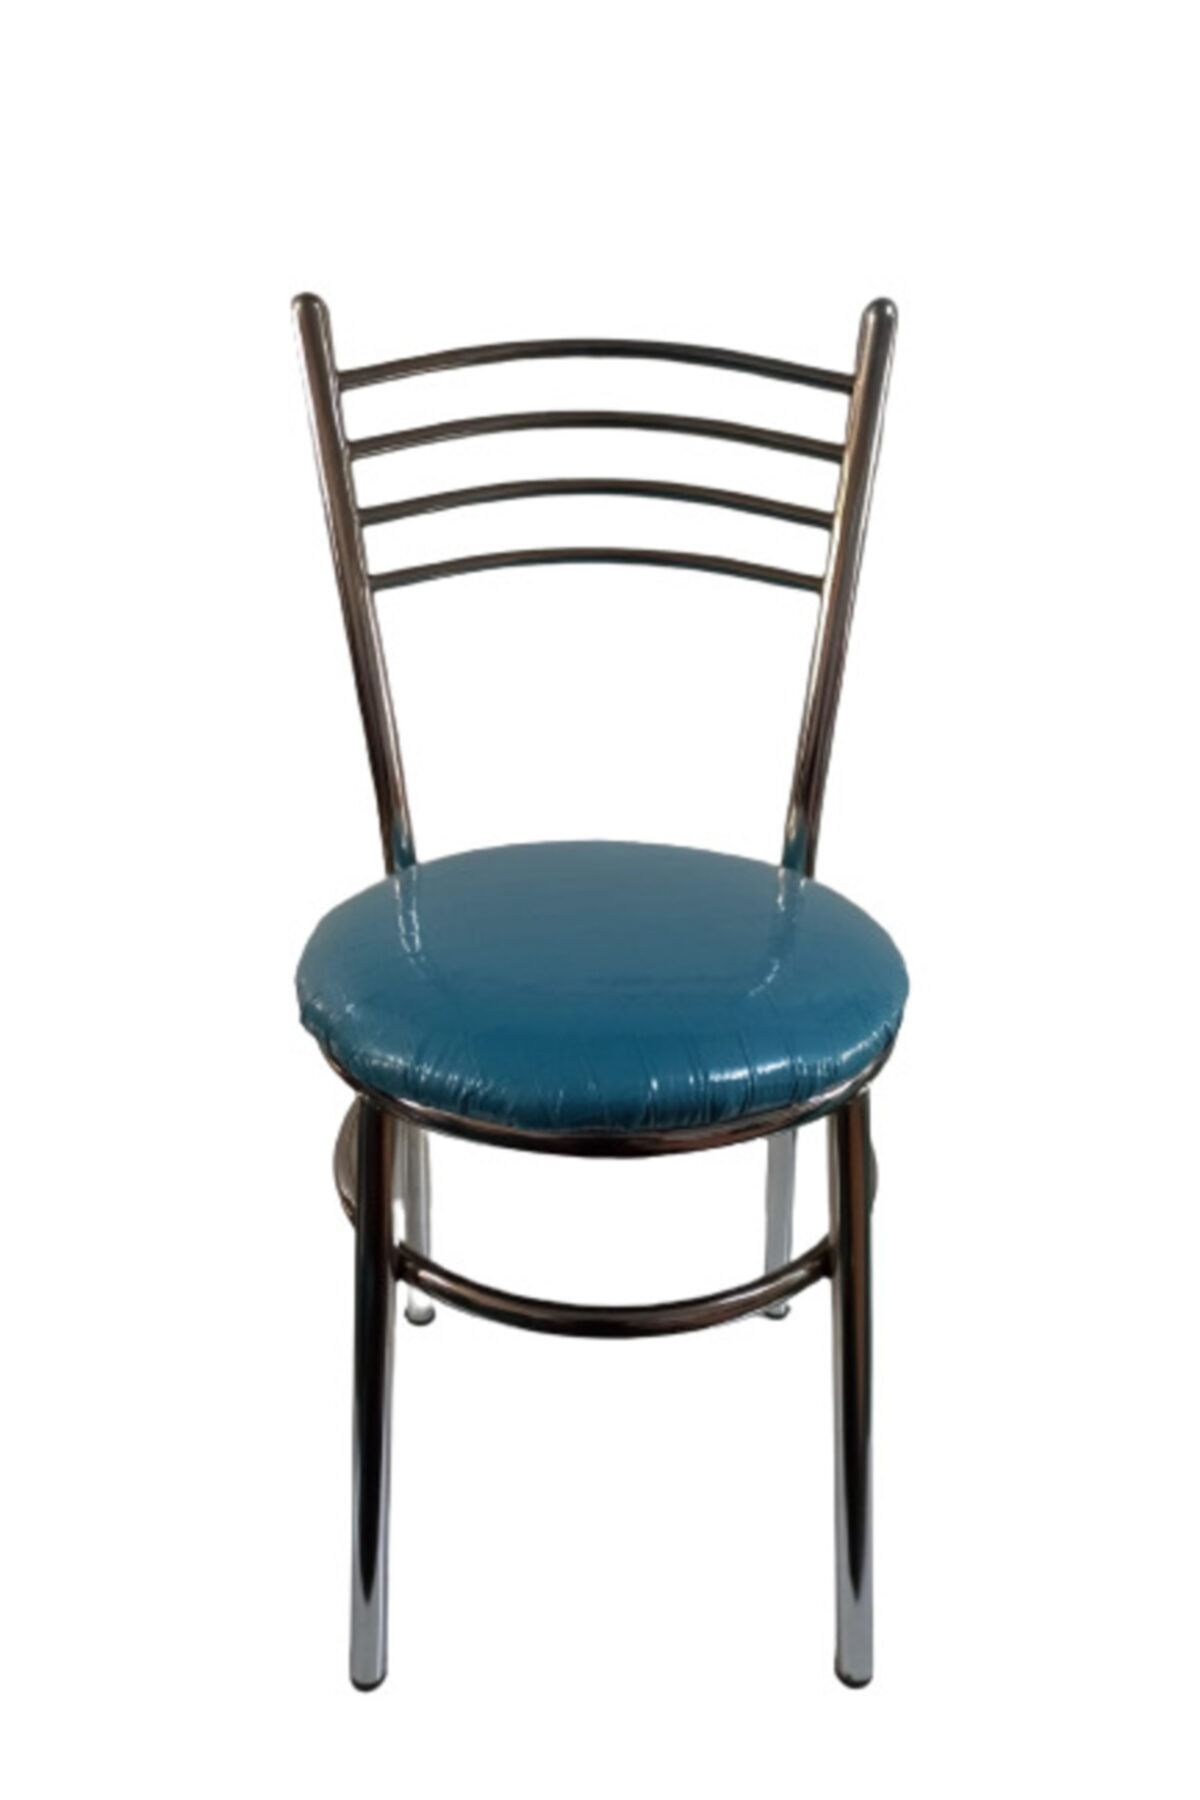 yılmaz masacılık Nikelajlı Mav, 6 Adet Tatlı Mutfak Bahçe Sandalyesi